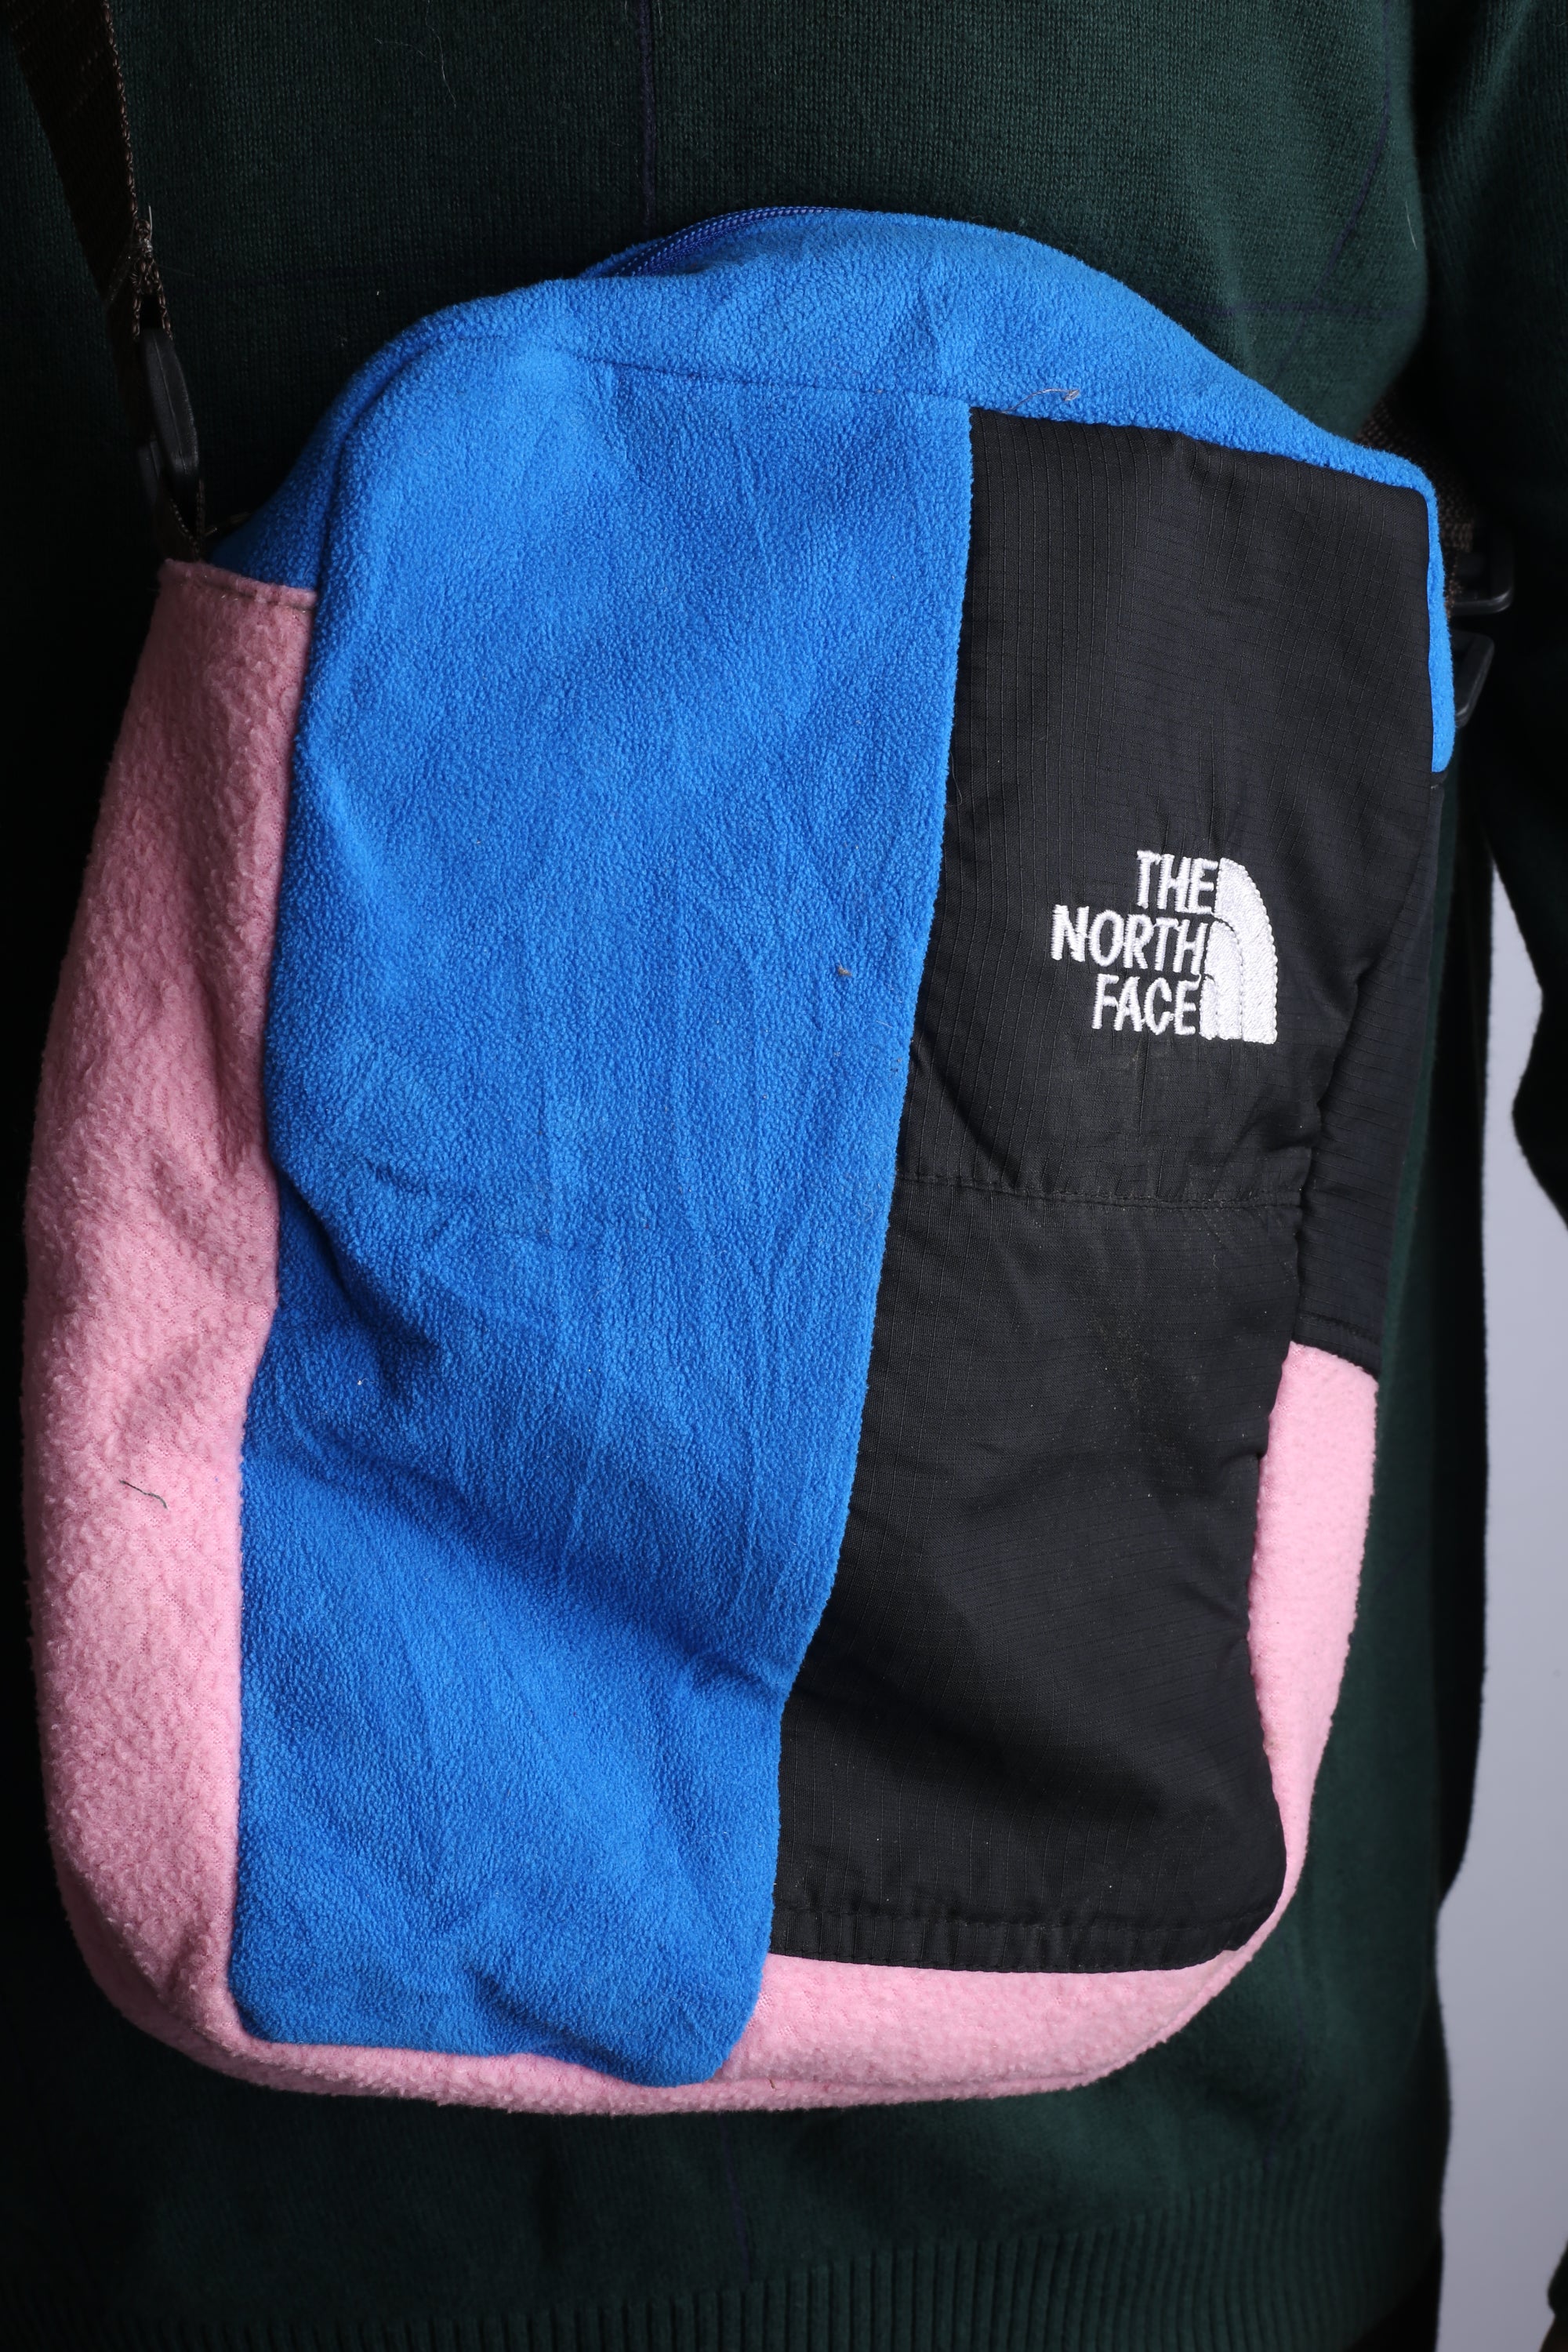 Vintage The North Face Re-Work Bag Black/Pink/Blue